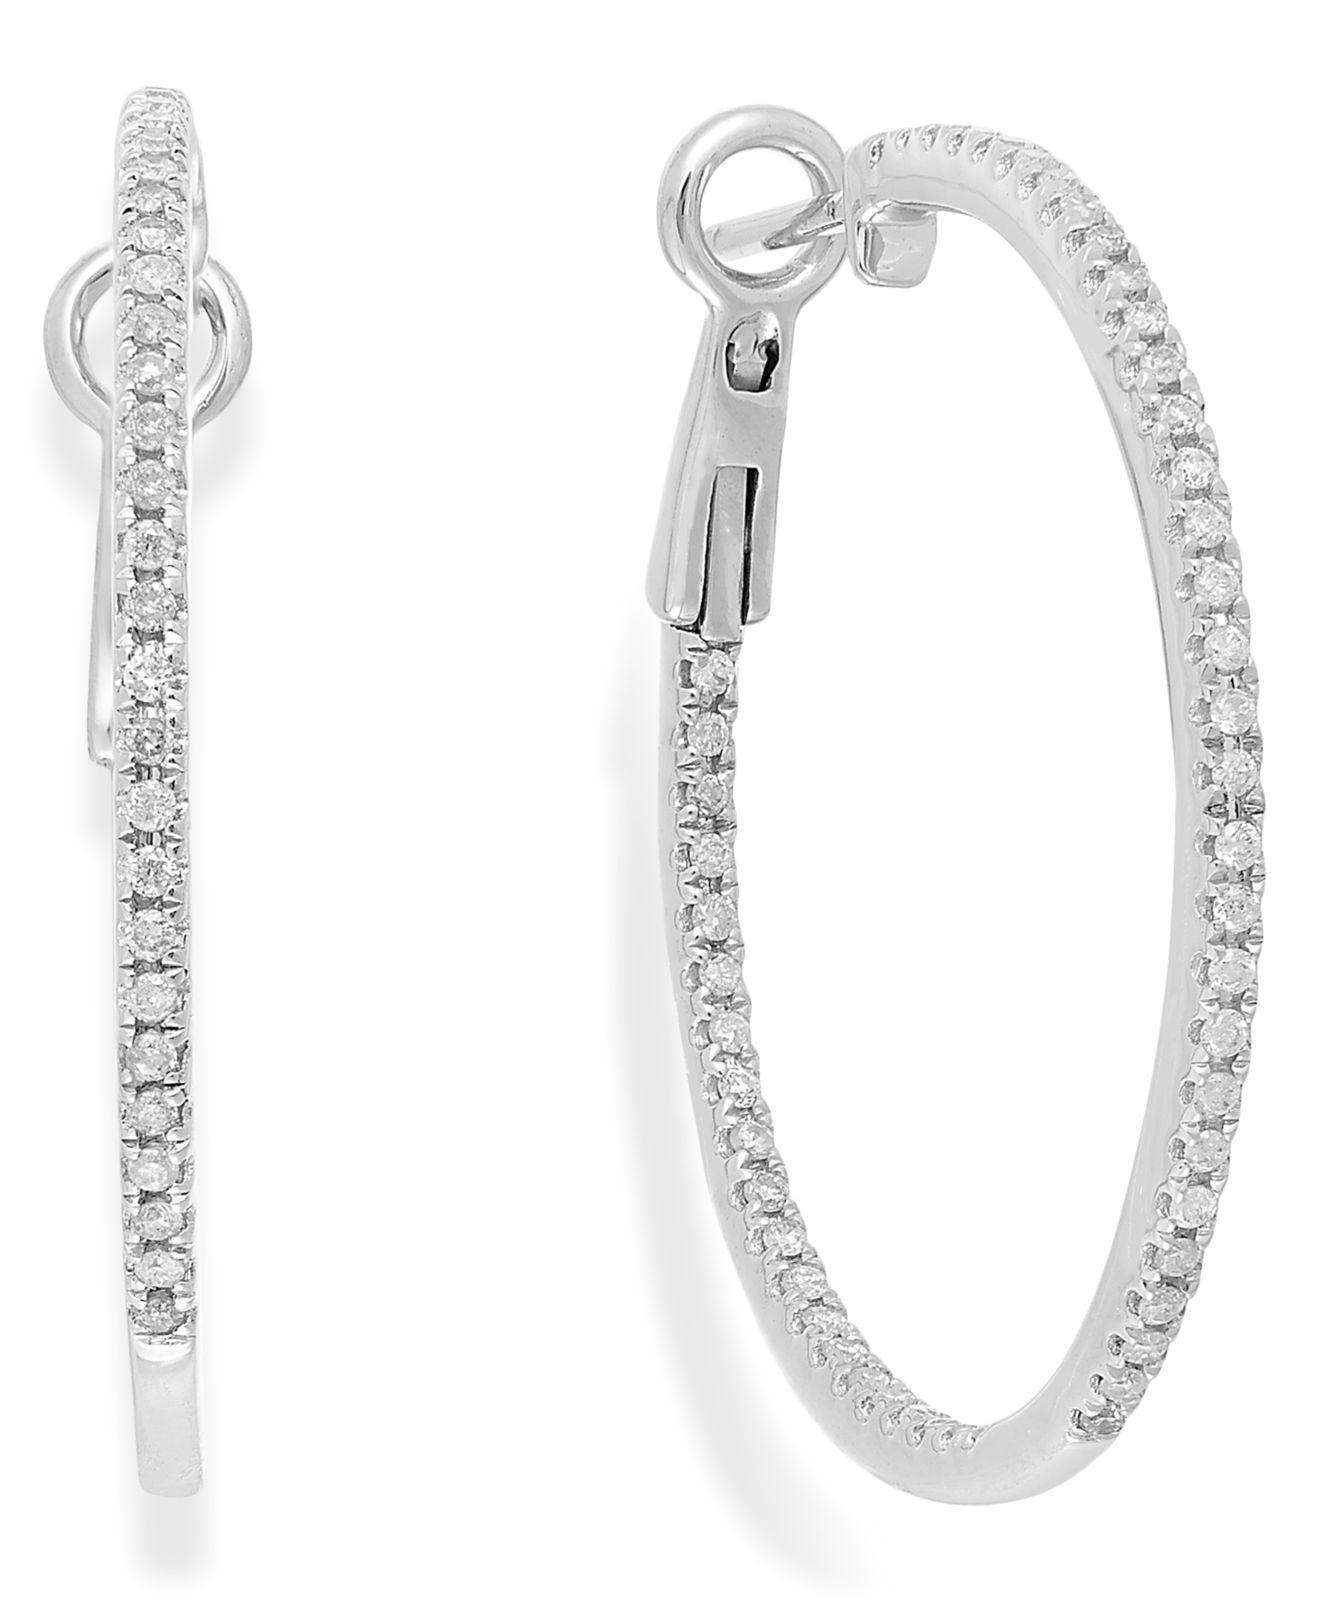 Lyst - Macy'S Diamond Hoop Earrings In 14k White Gold (1/2 Ct. T.w.) in ...